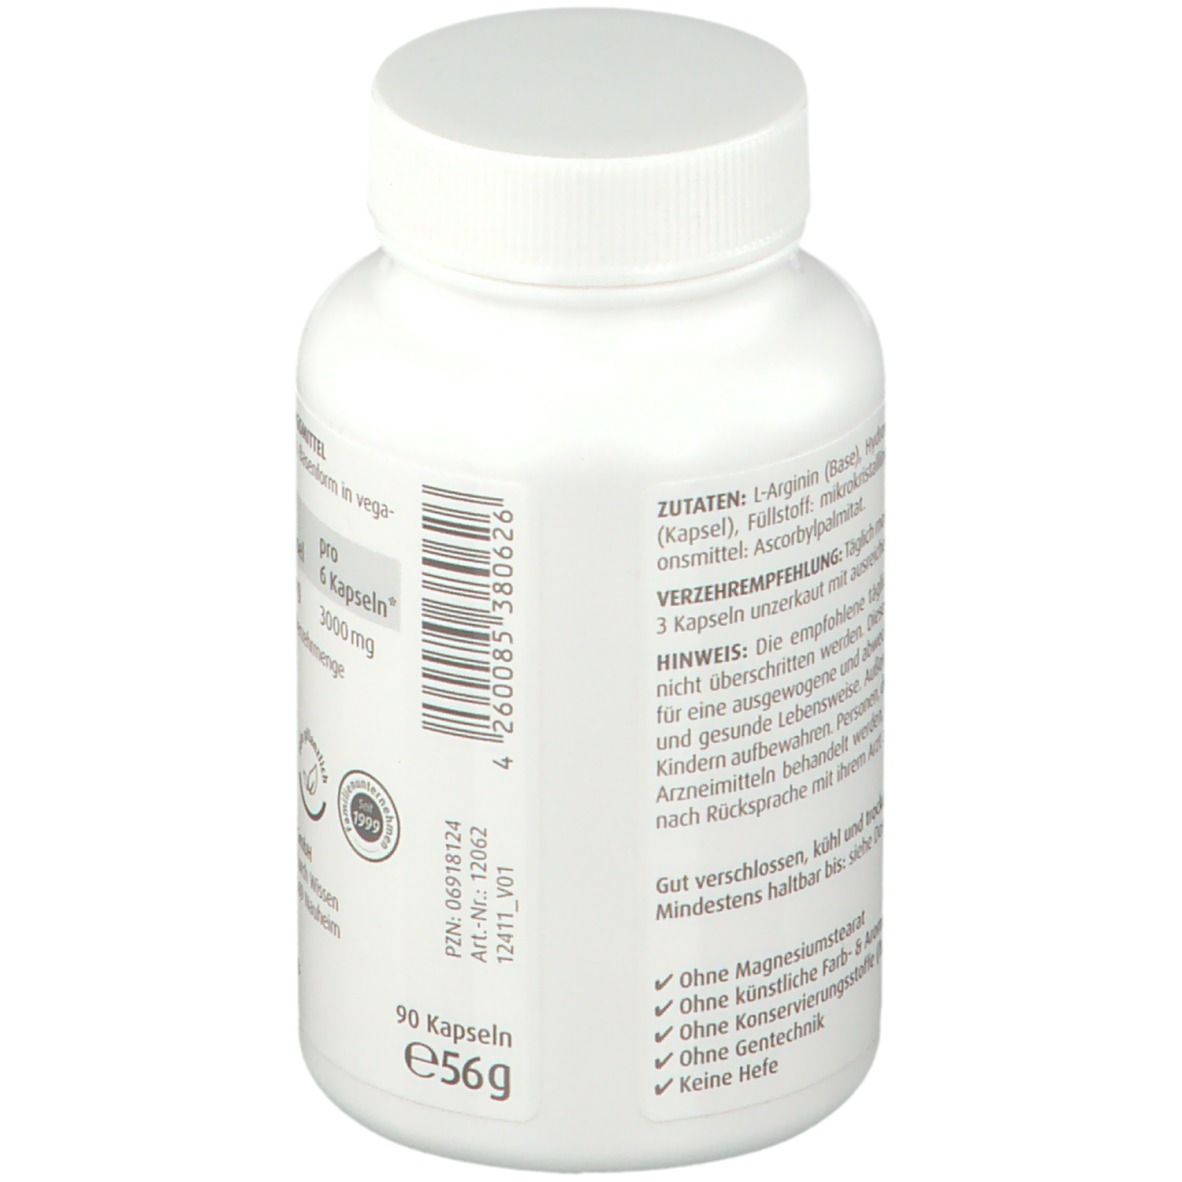 L Arginine Capsules 500 mg ZeinPharma